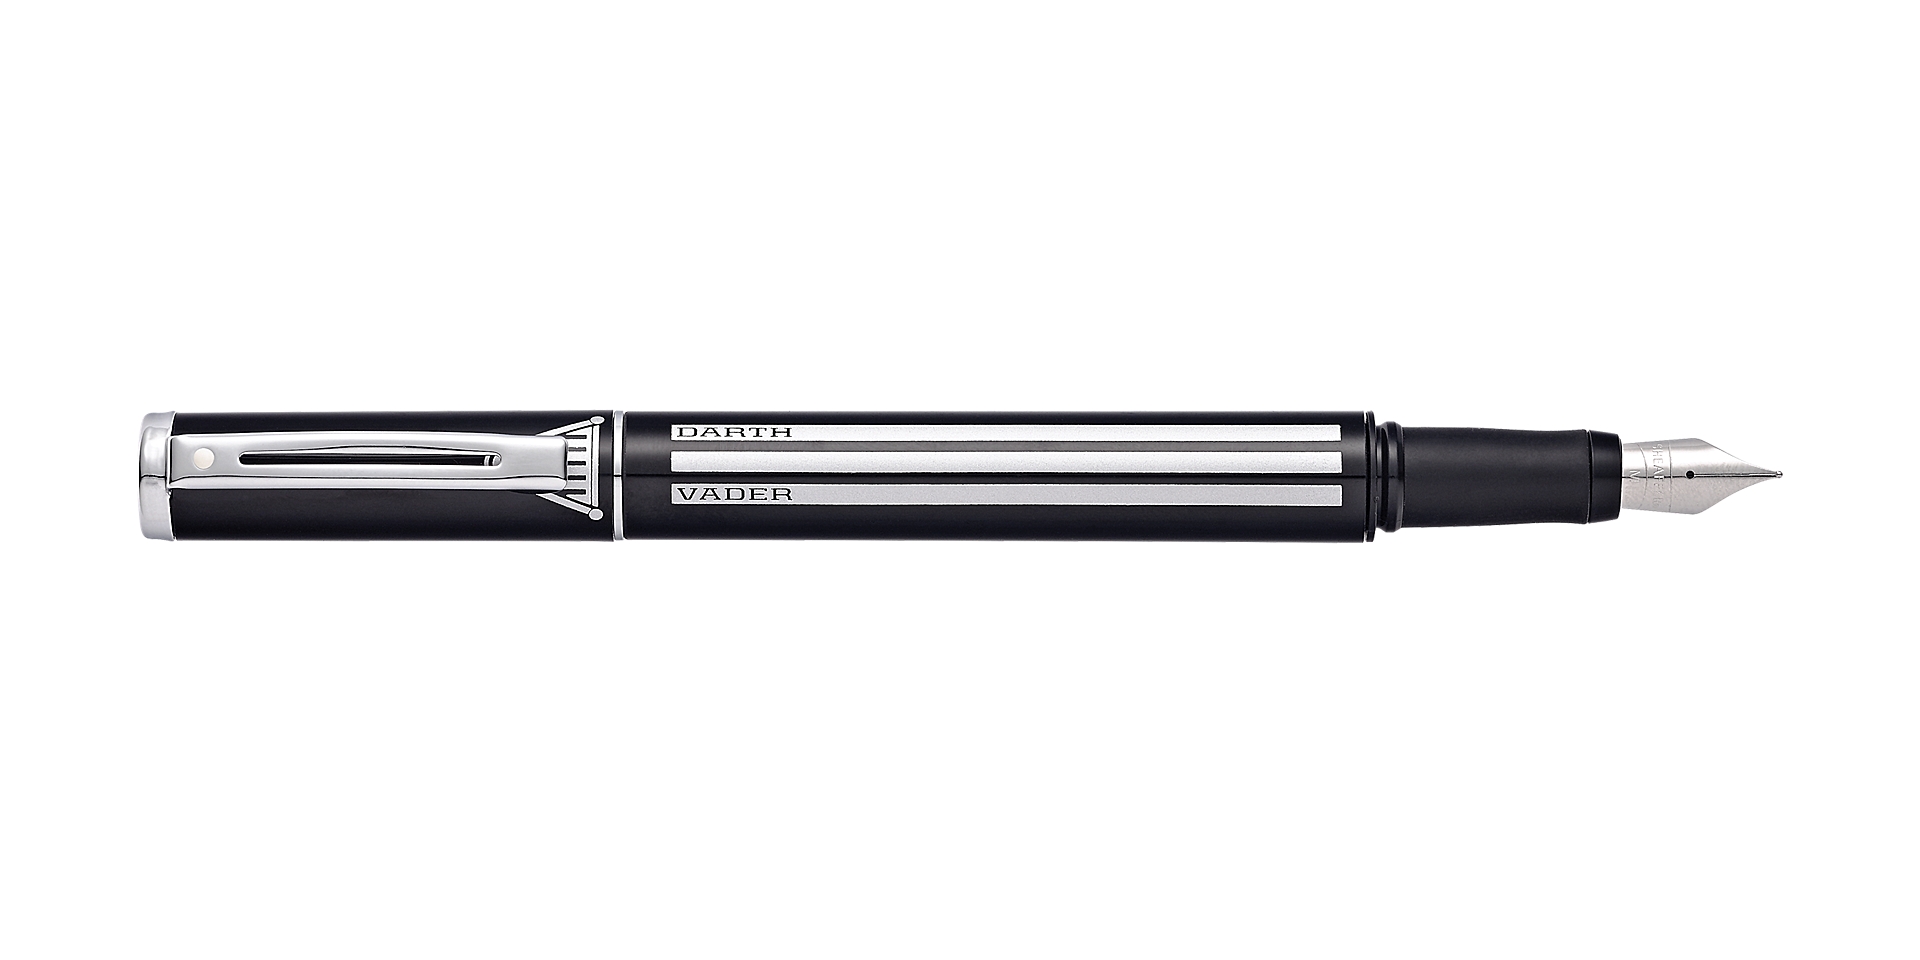 The Sheaffer Star Wars™ Pop Darth Vader™ Fountain Pen